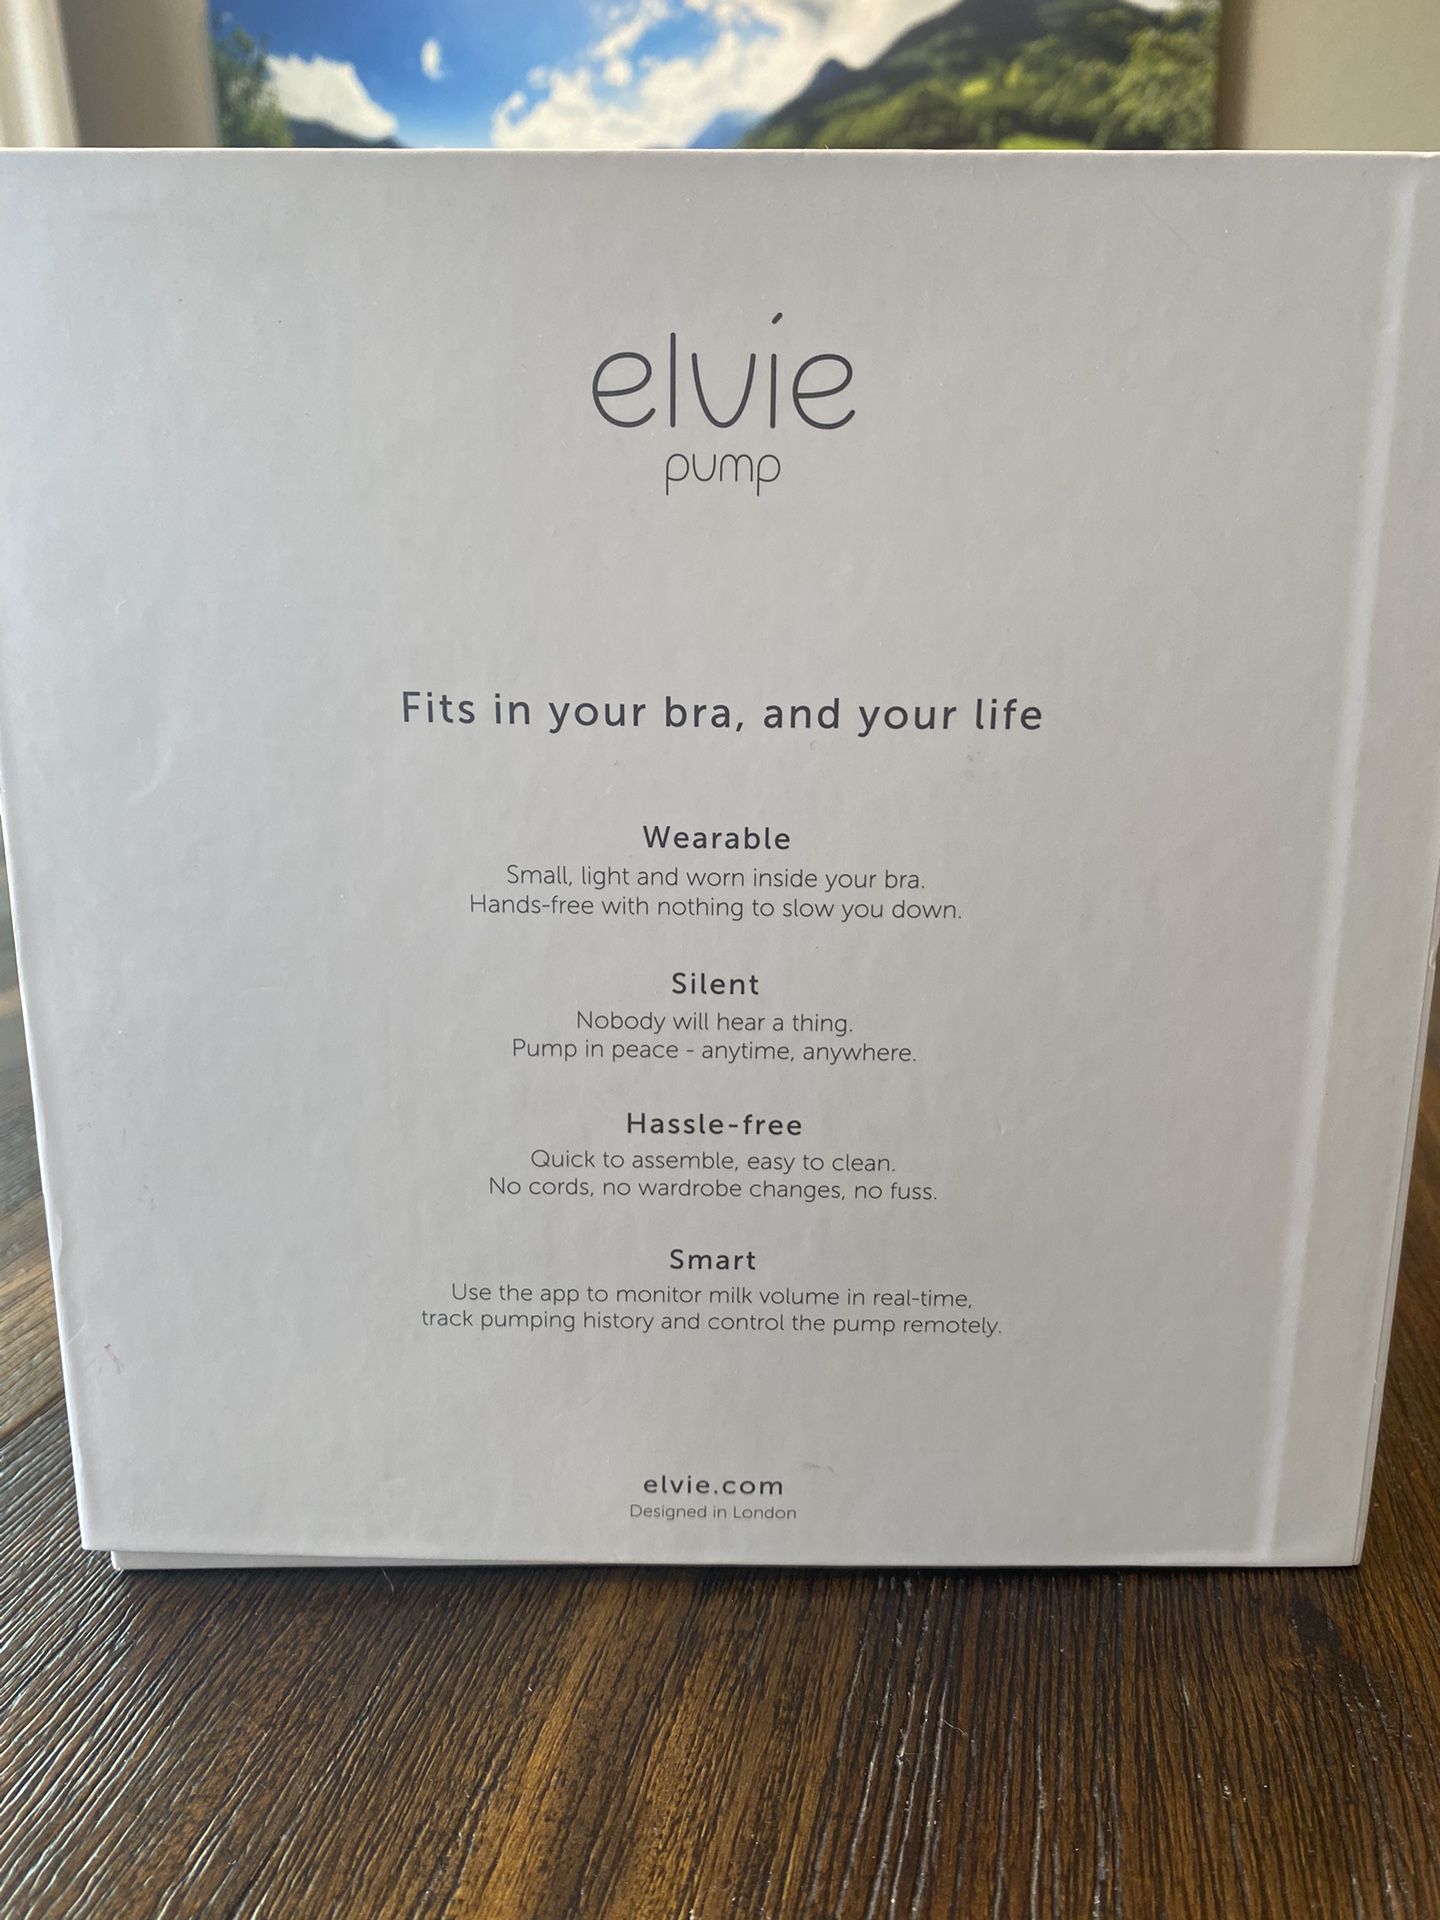 Elvie Breast Pump for Sale in Las Vegas, NV - OfferUp